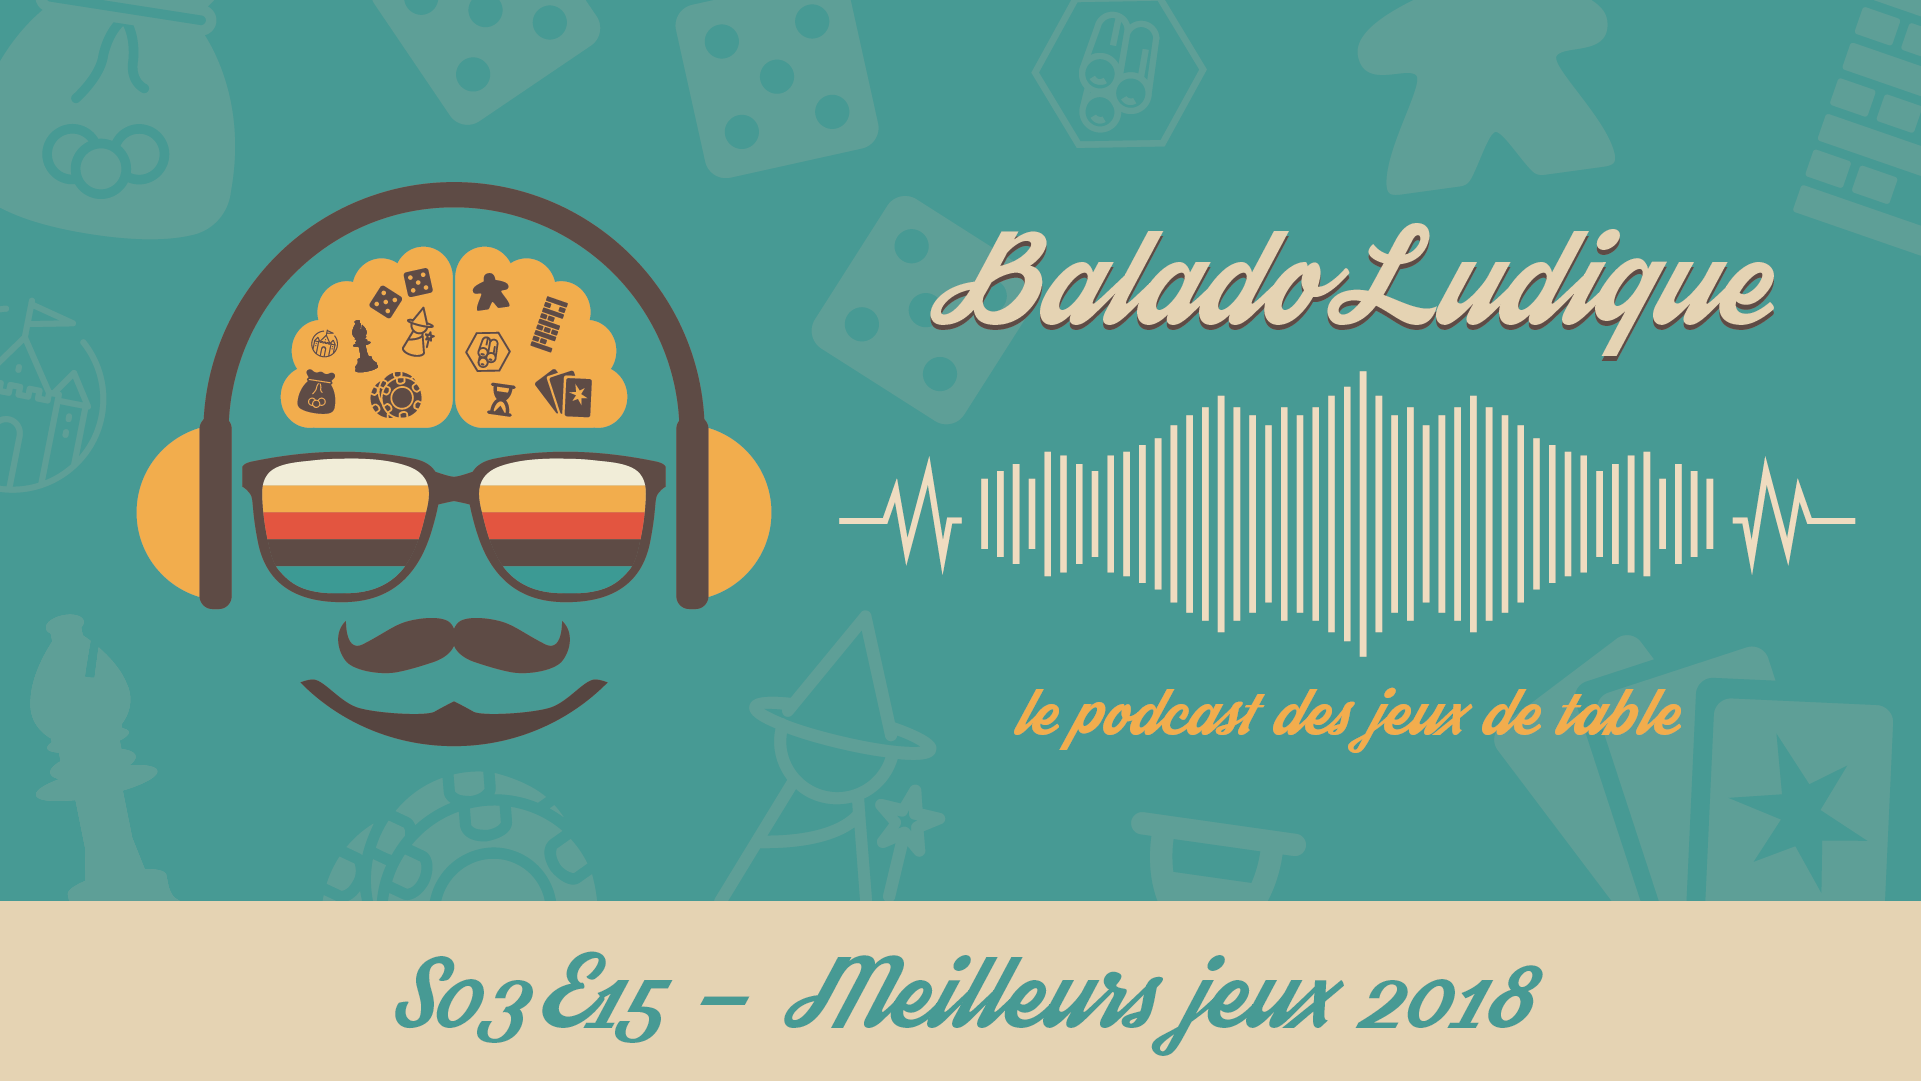 Meilleurs jeux 2018 - BaladoLudique - s03-e15